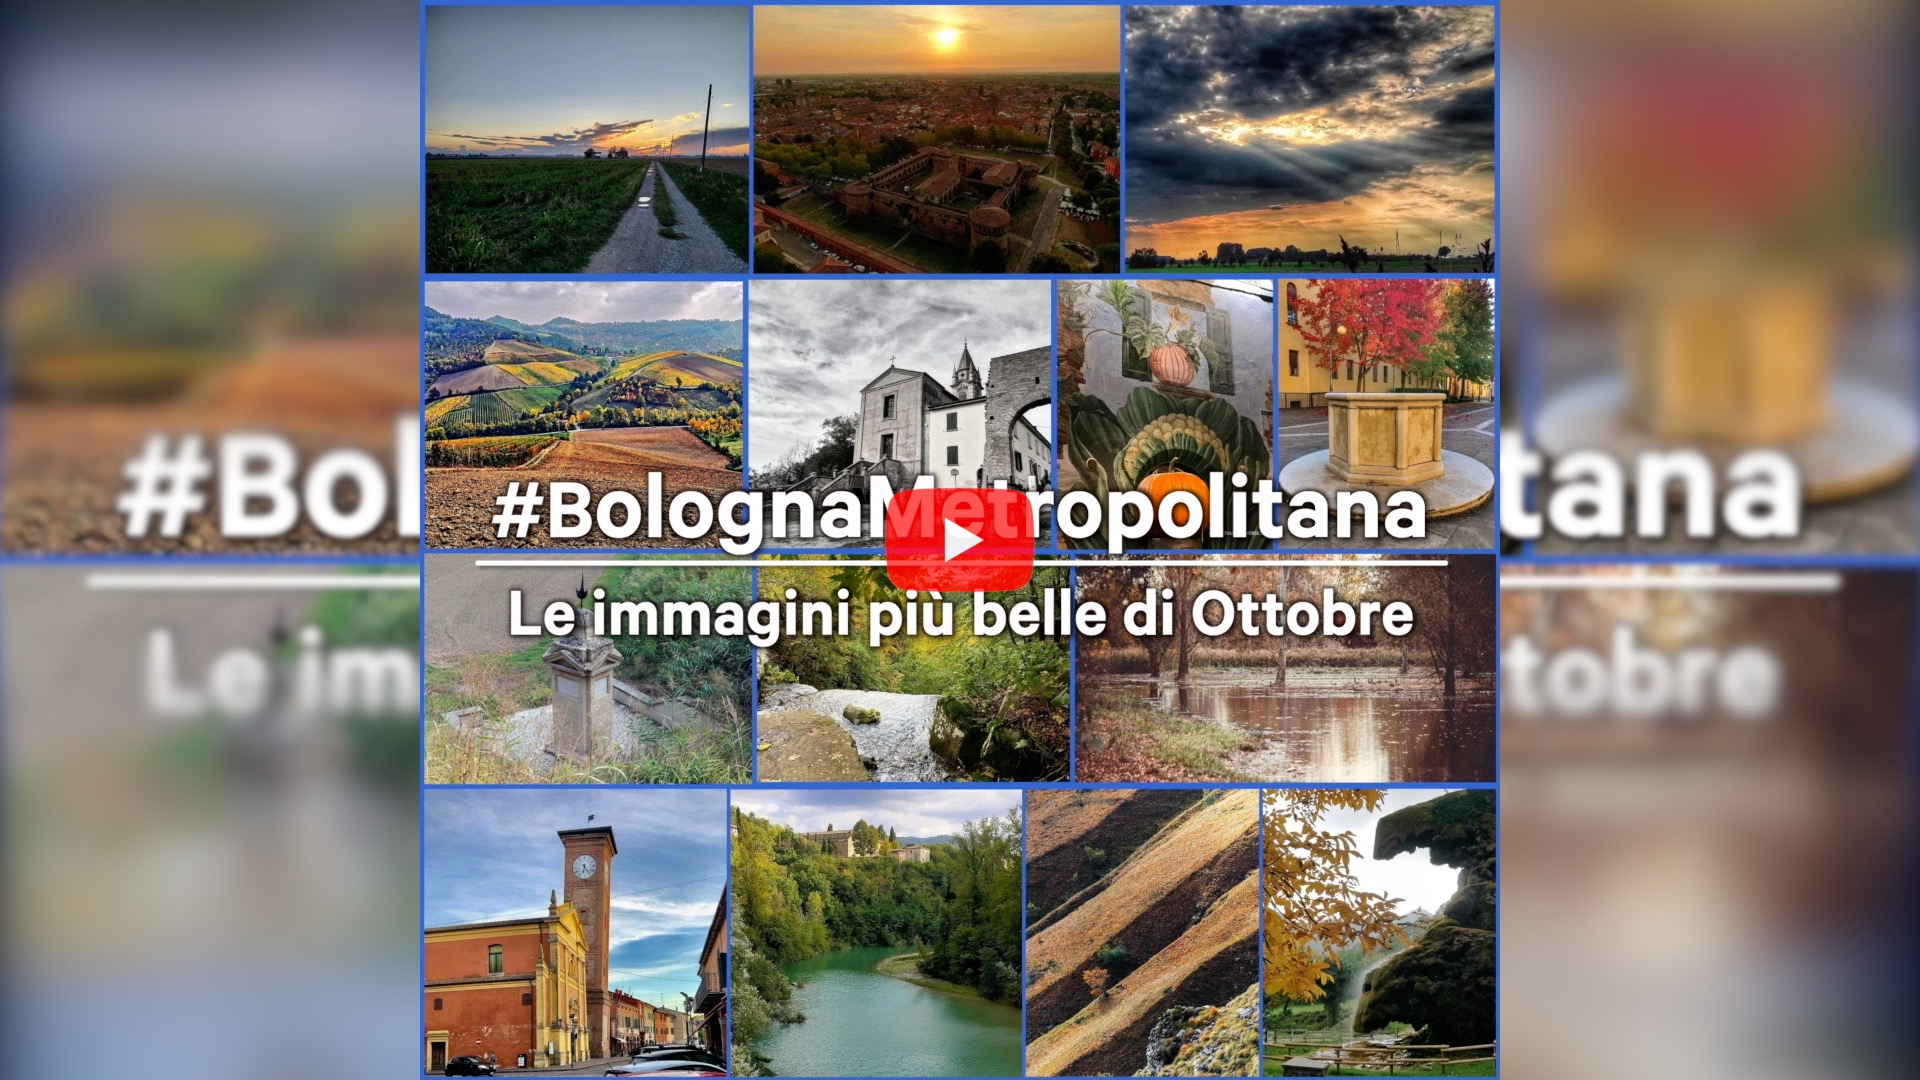 #BolognaMetropolitana - Le immagini più belle di ottobre 2021